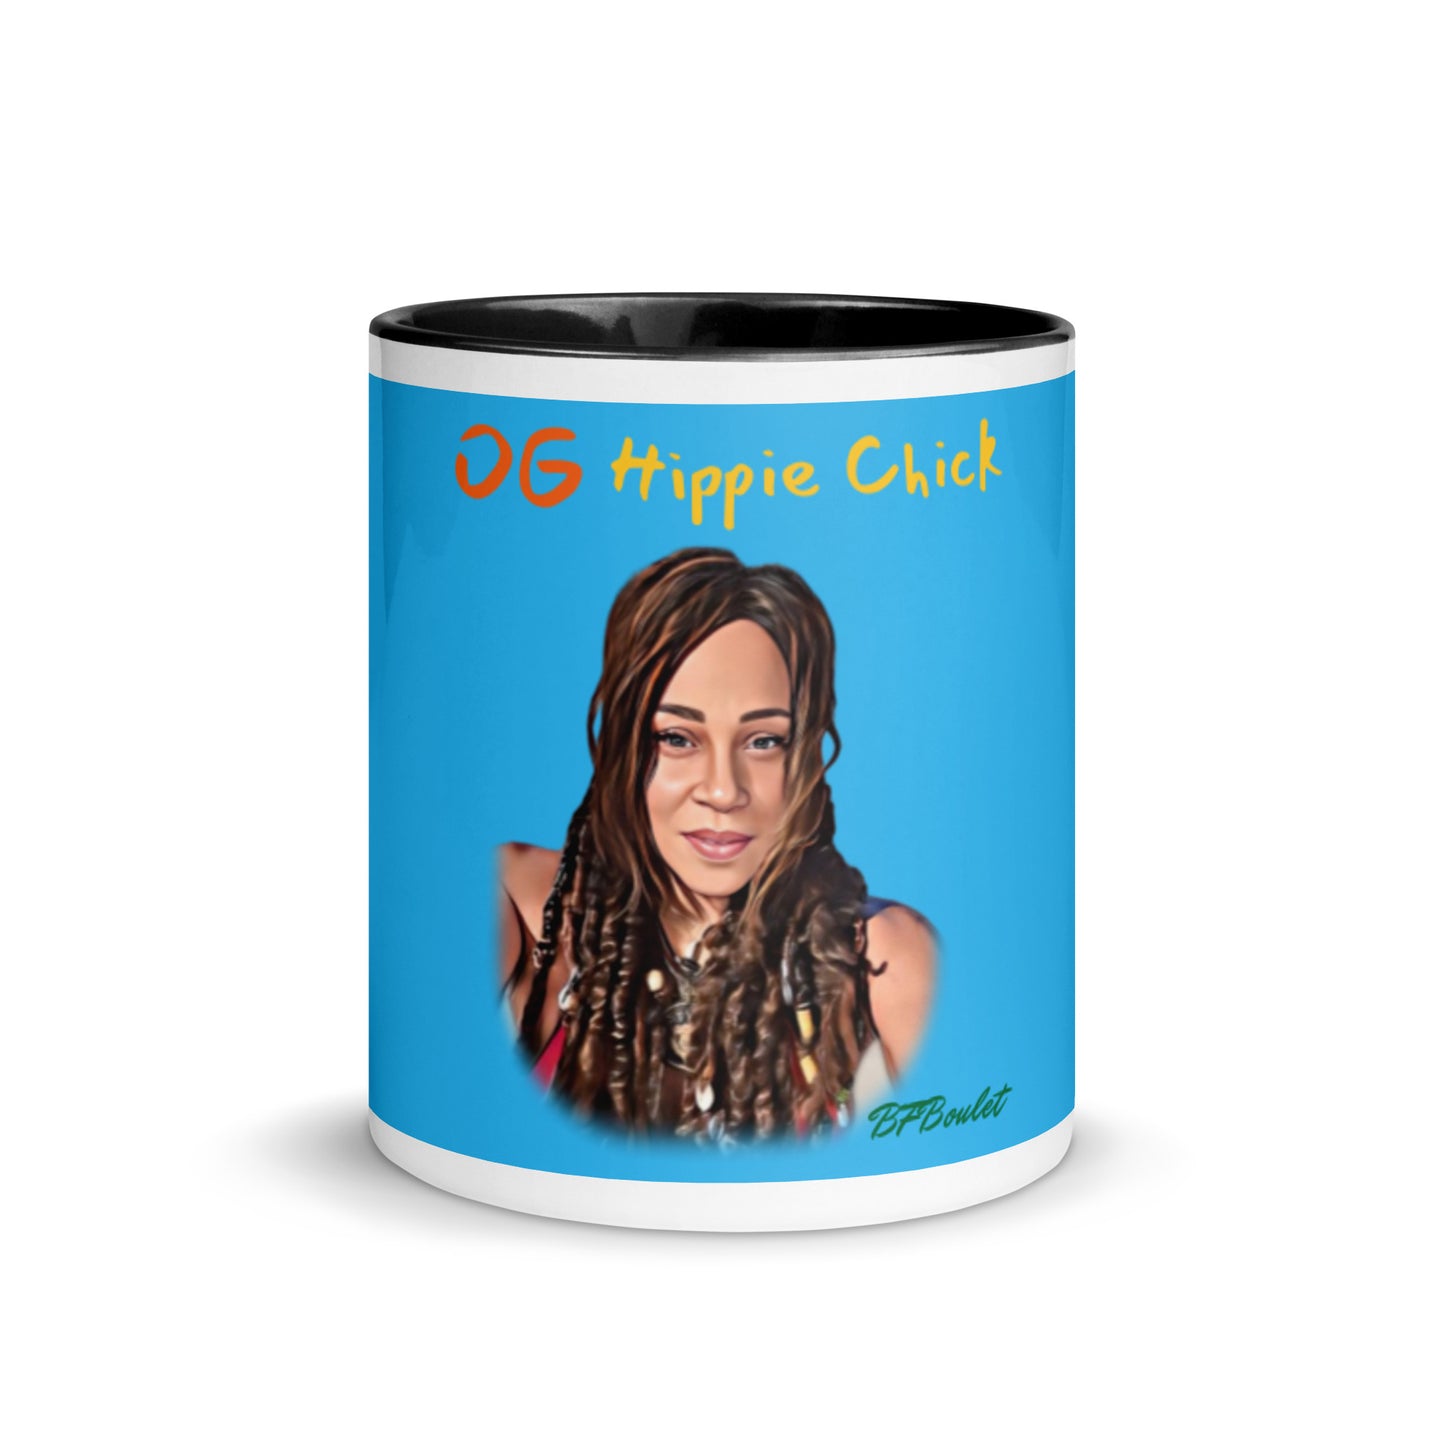 Mug Couleur Bleu Ciel - OG Hippie Chick (BFBoulet)